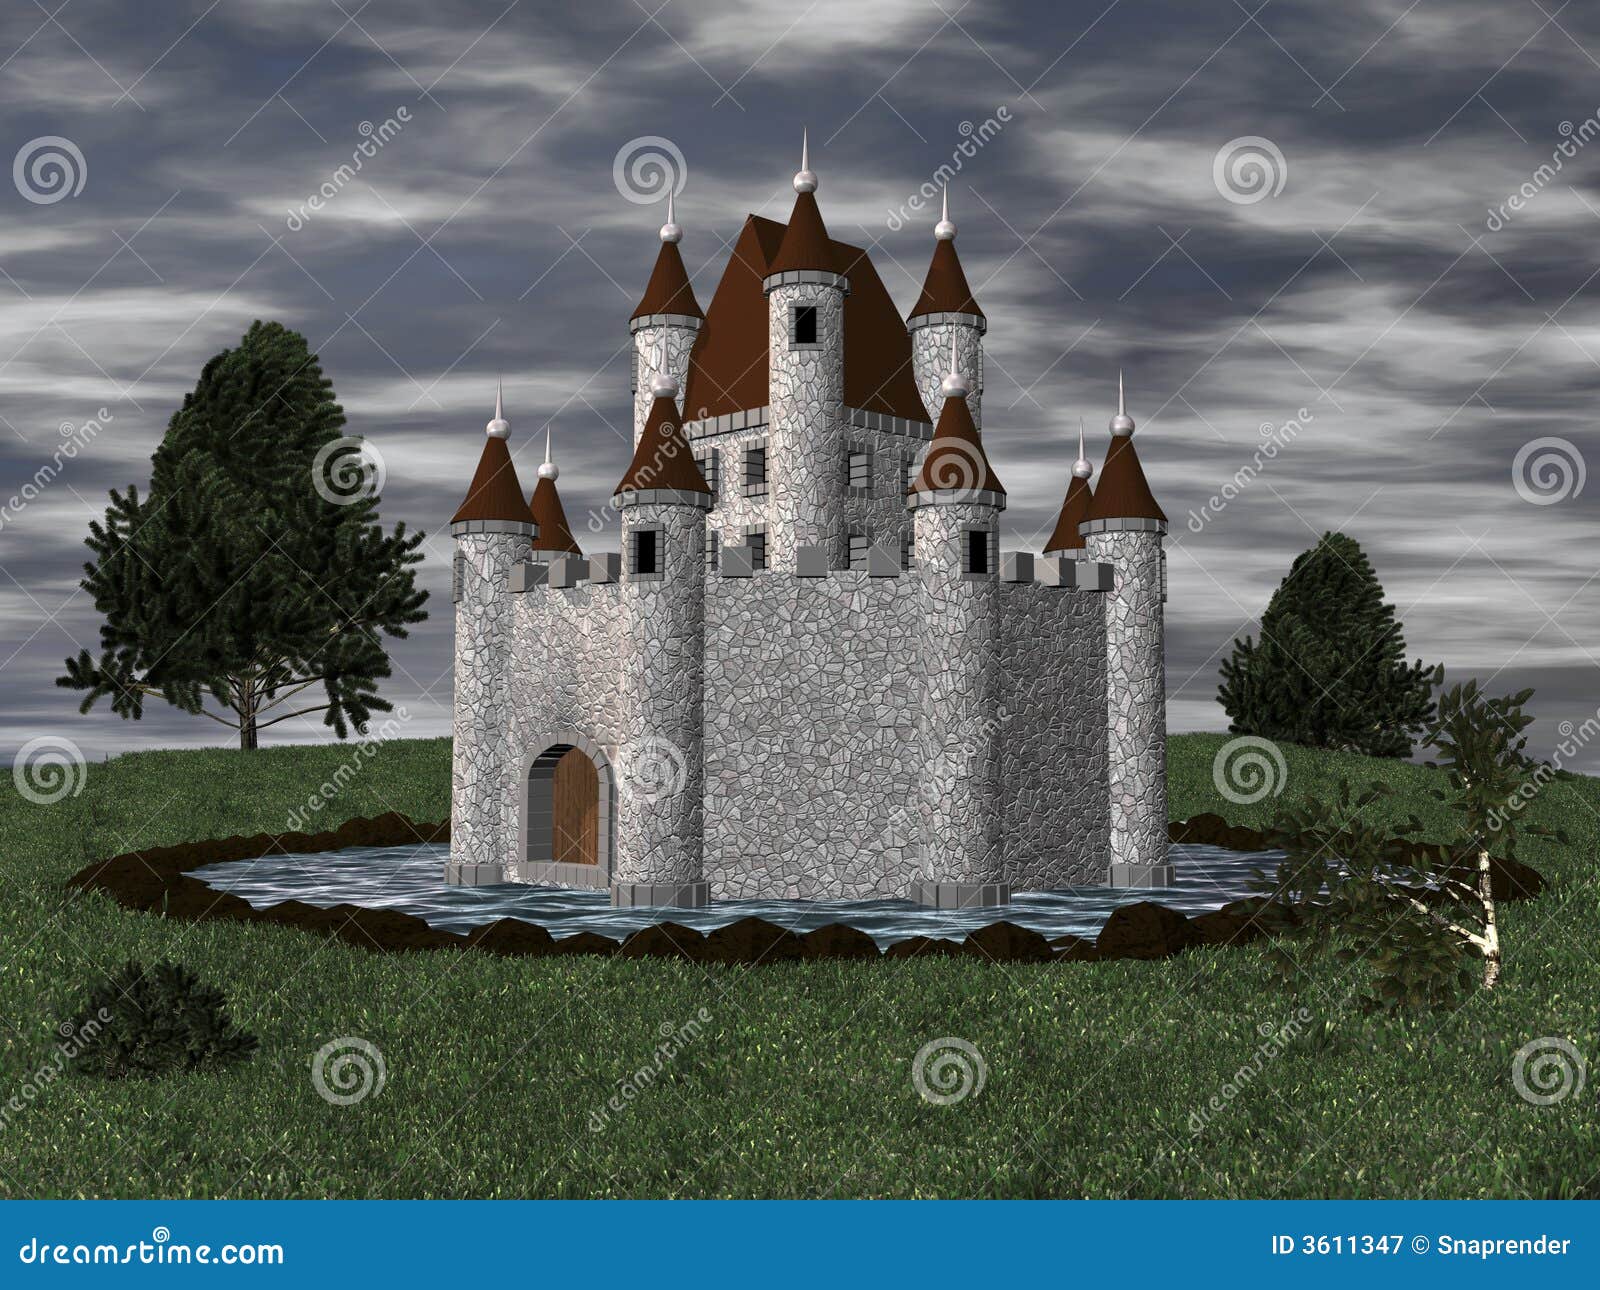 3d castle with moat